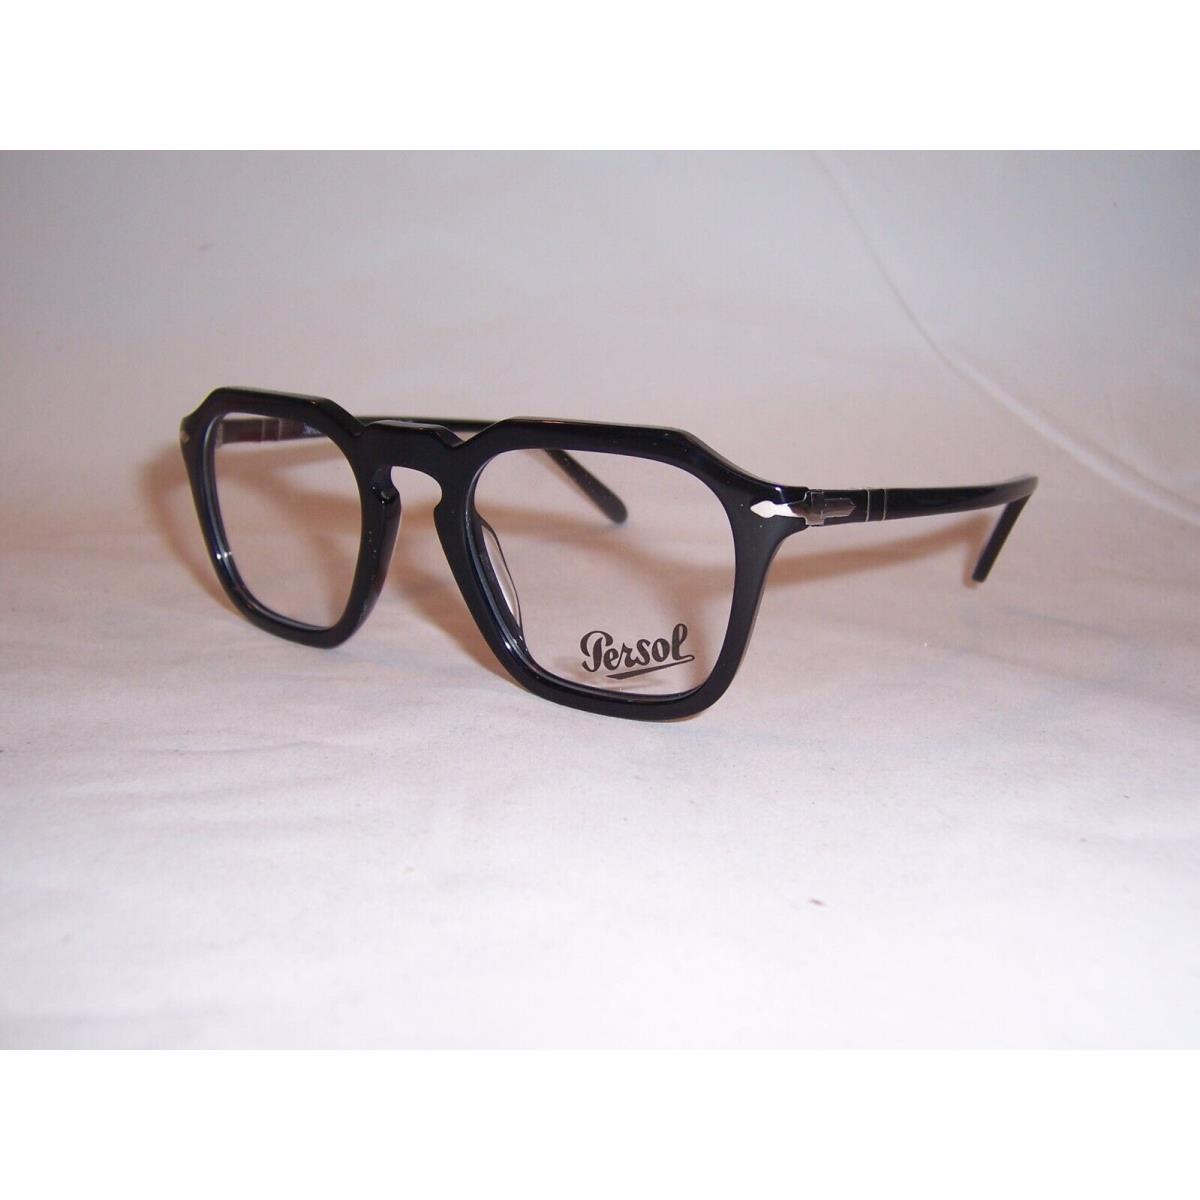 Persol eyeglasses  - Black Frame 1